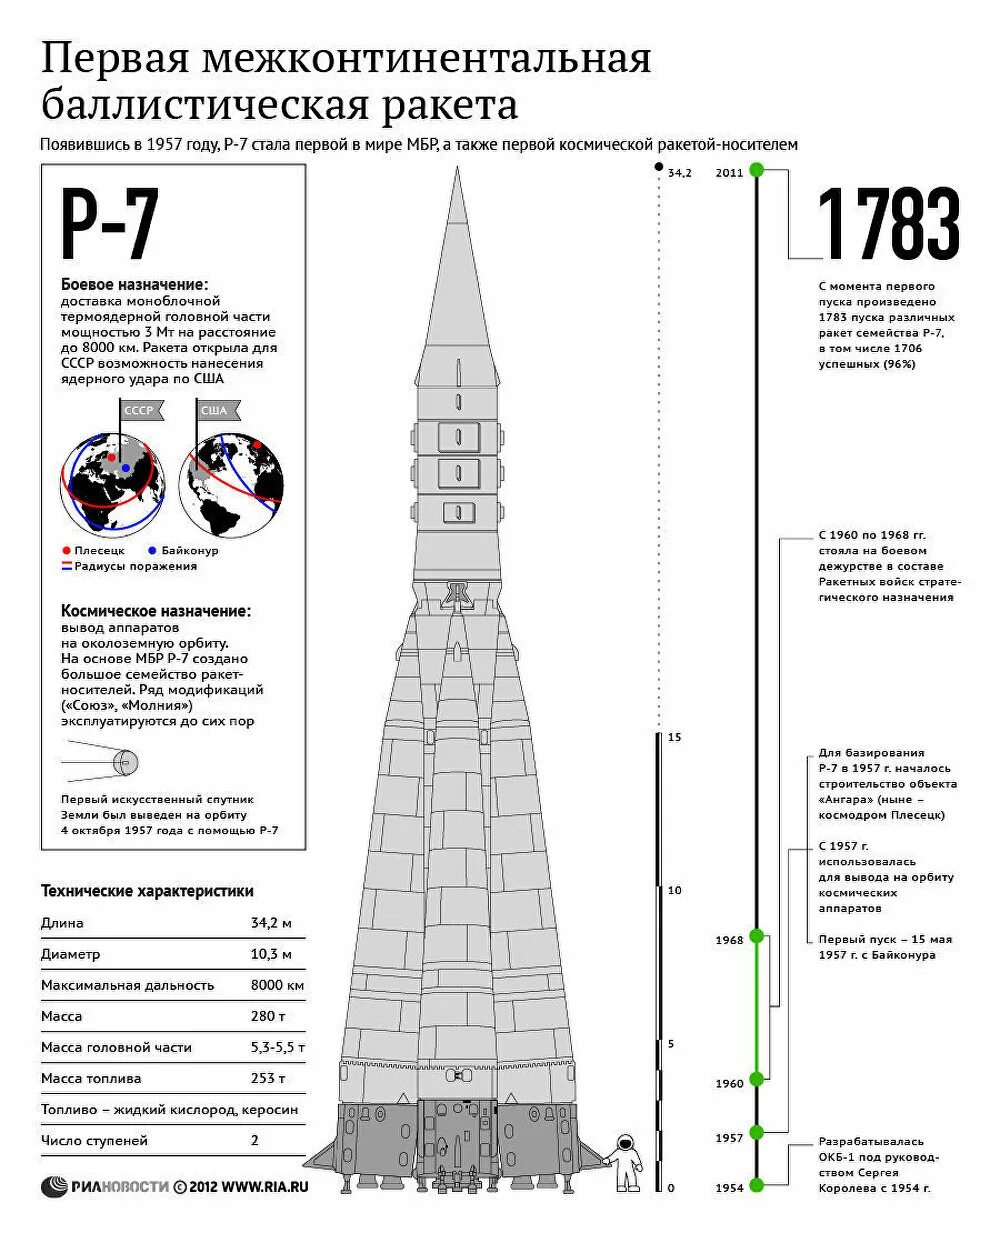 Создание первой баллистической ракеты. Первая в мире межконтинентальная баллистическая ракета р-7. Межконтинентальная ракета Королева р7 1957. Межконтинентальная баллистическая ракета 1957. Первая межконтинентальная баллистическая ракета СССР р7.